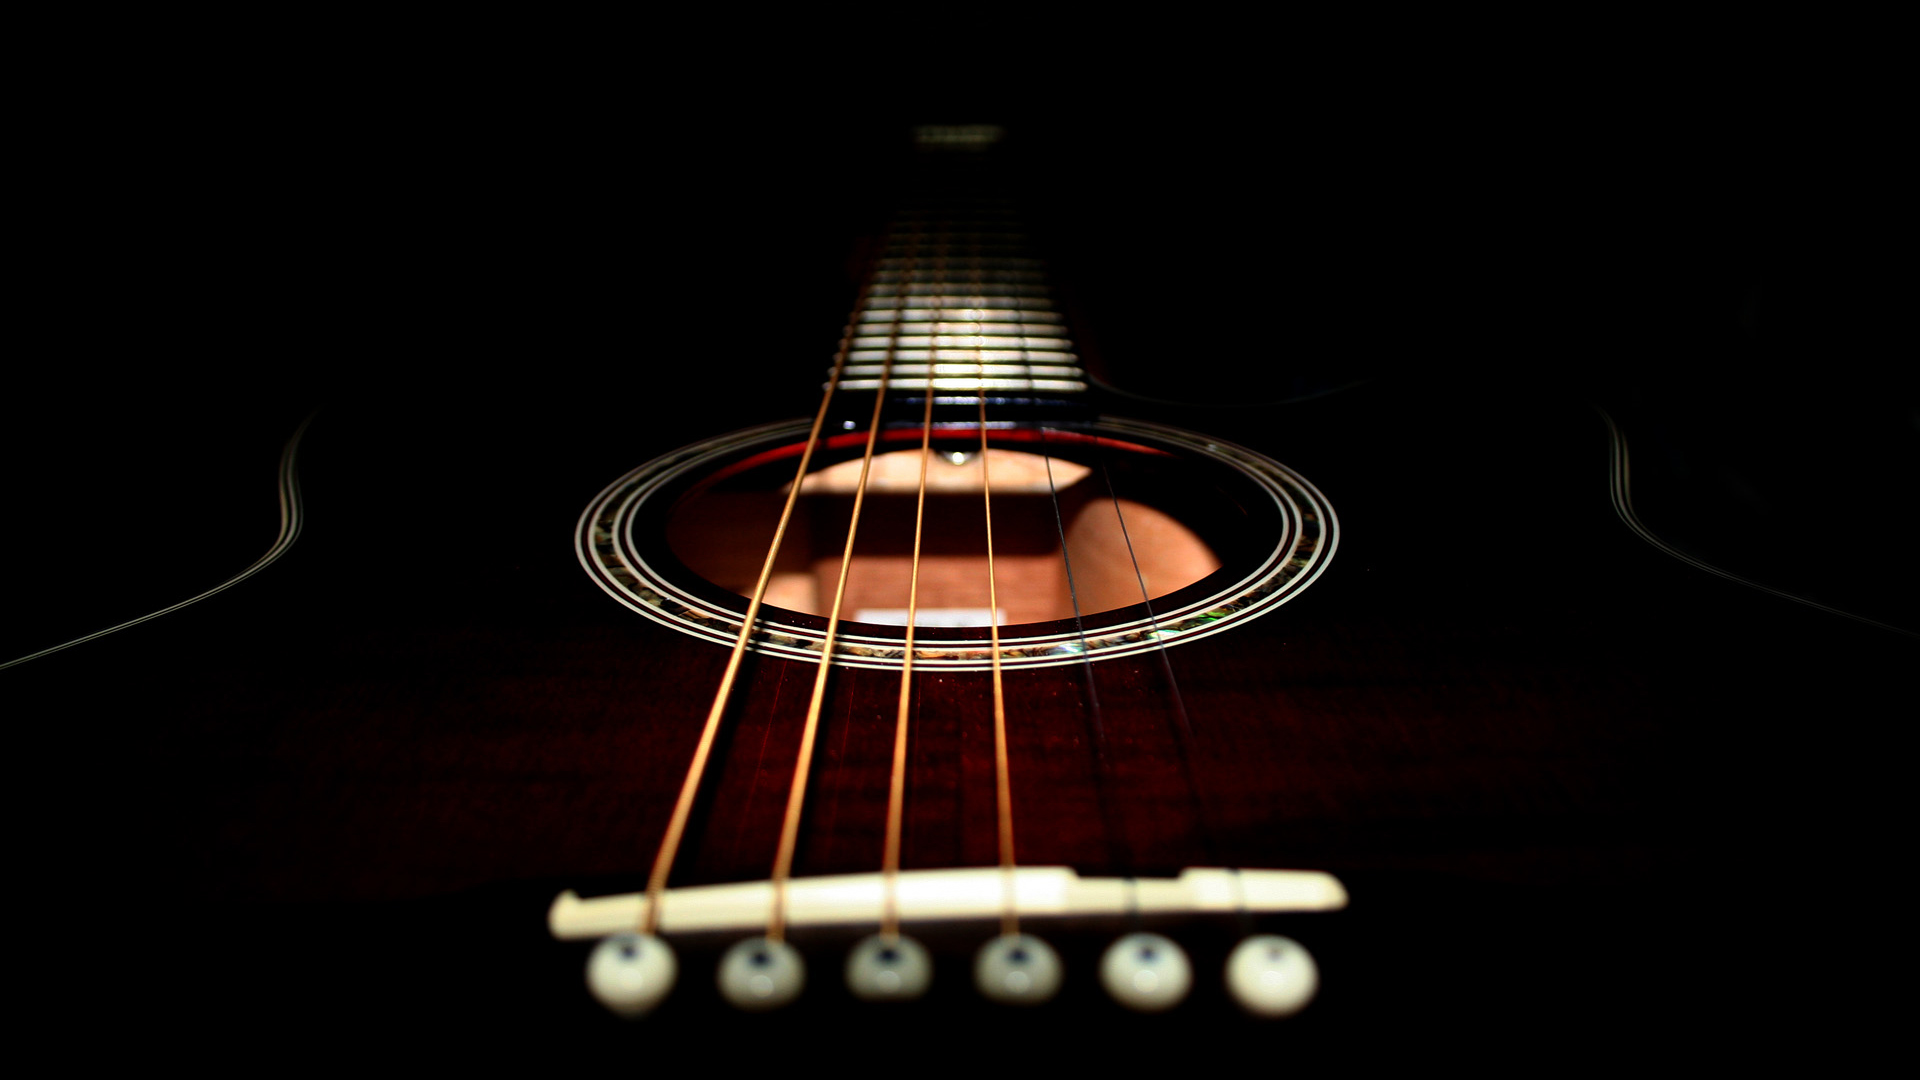 acoustic guitars, guitars - desktop wallpaper